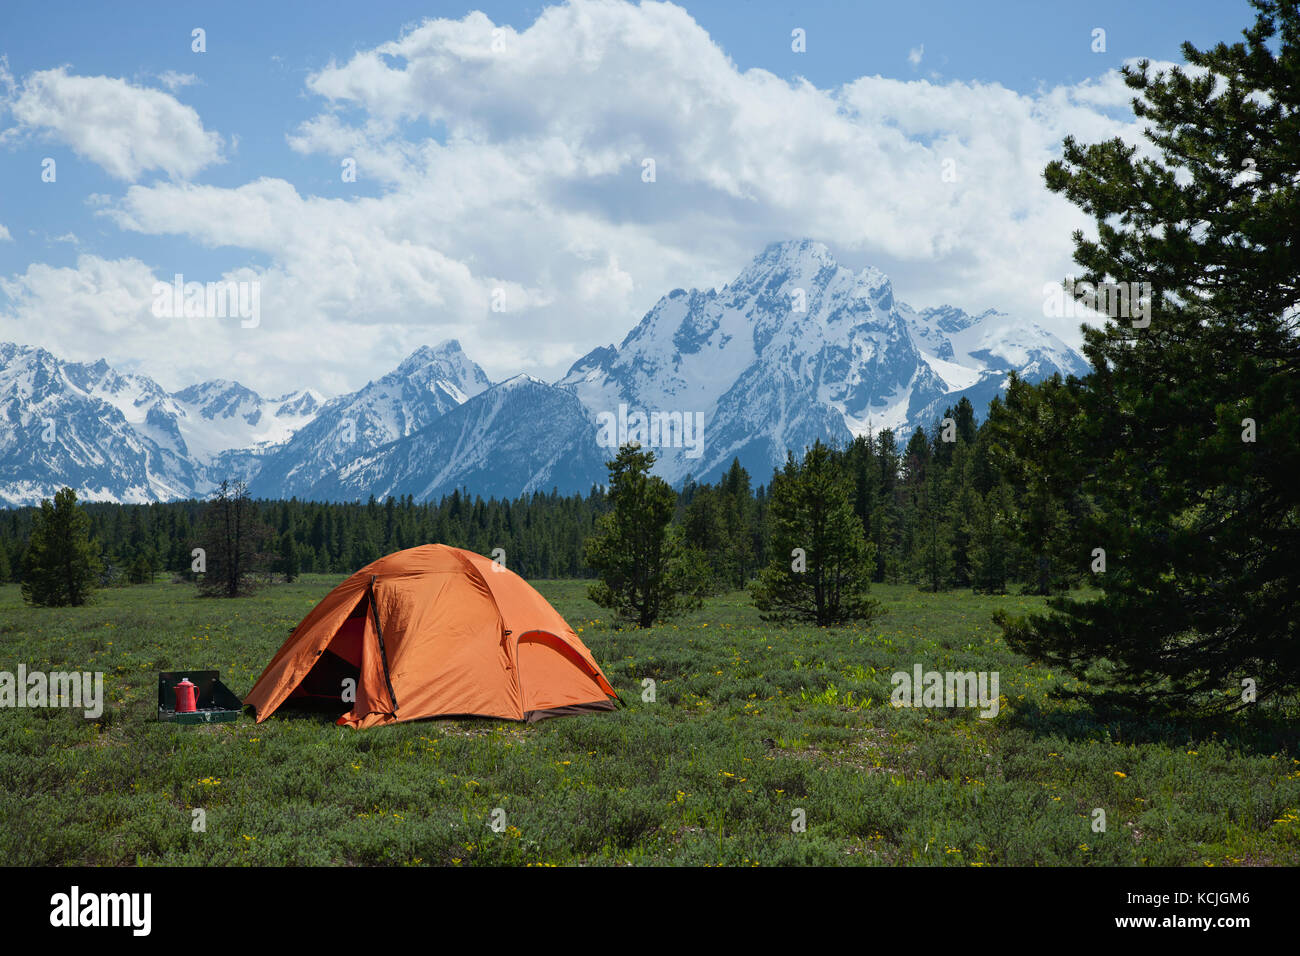 Eine orange Zelt sitzt auf einer Wiese, von Pinien unterhalb des Grand Teton Bergkette umgeben Stockfoto